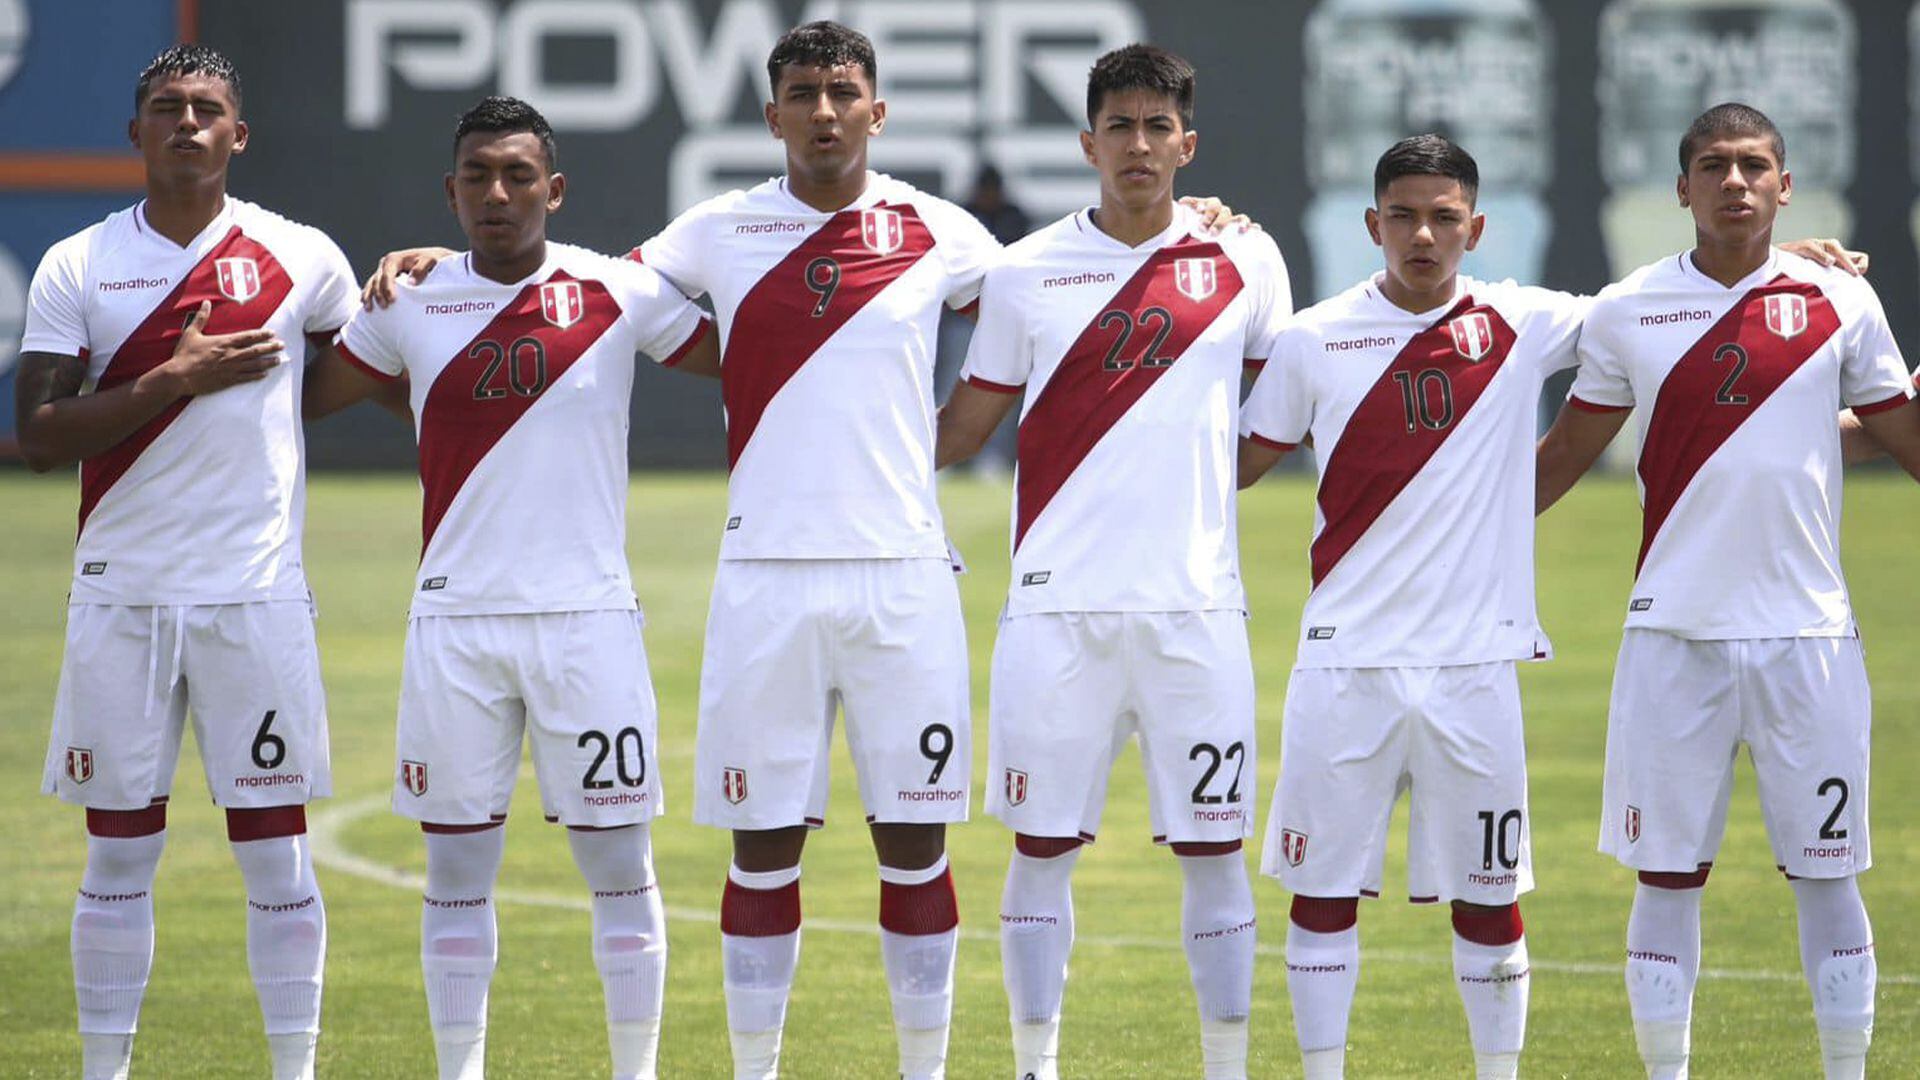 Perú integrará el Grupo A del Sudamericano sub 20 con Argentina, Brasil, Colombia y Paraguay. (FPF)